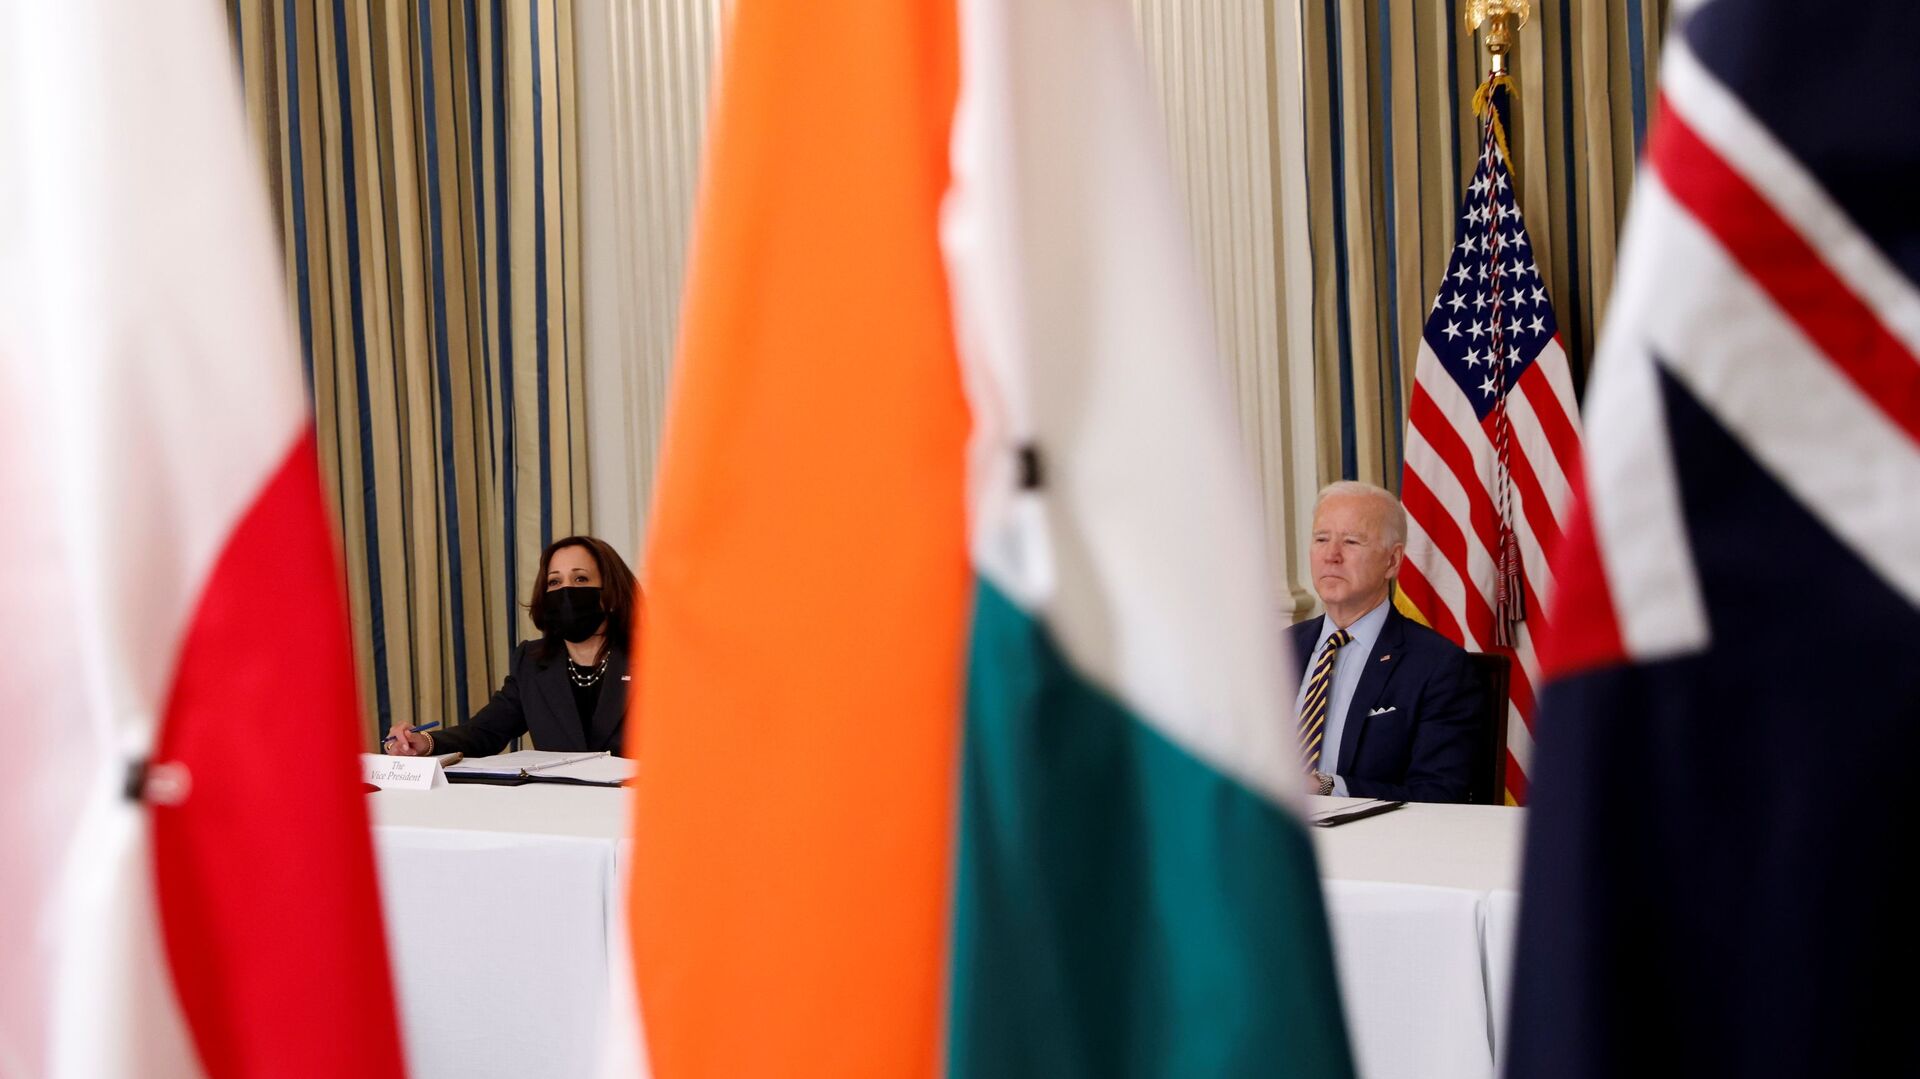 Tổng thống Joe Biden và Phó Tổng thống Kamala Harris tham dự cuộc họp trực tuyến QUAD tại Nhà Trắng ở Washington - Sputnik Việt Nam, 1920, 16.07.2021